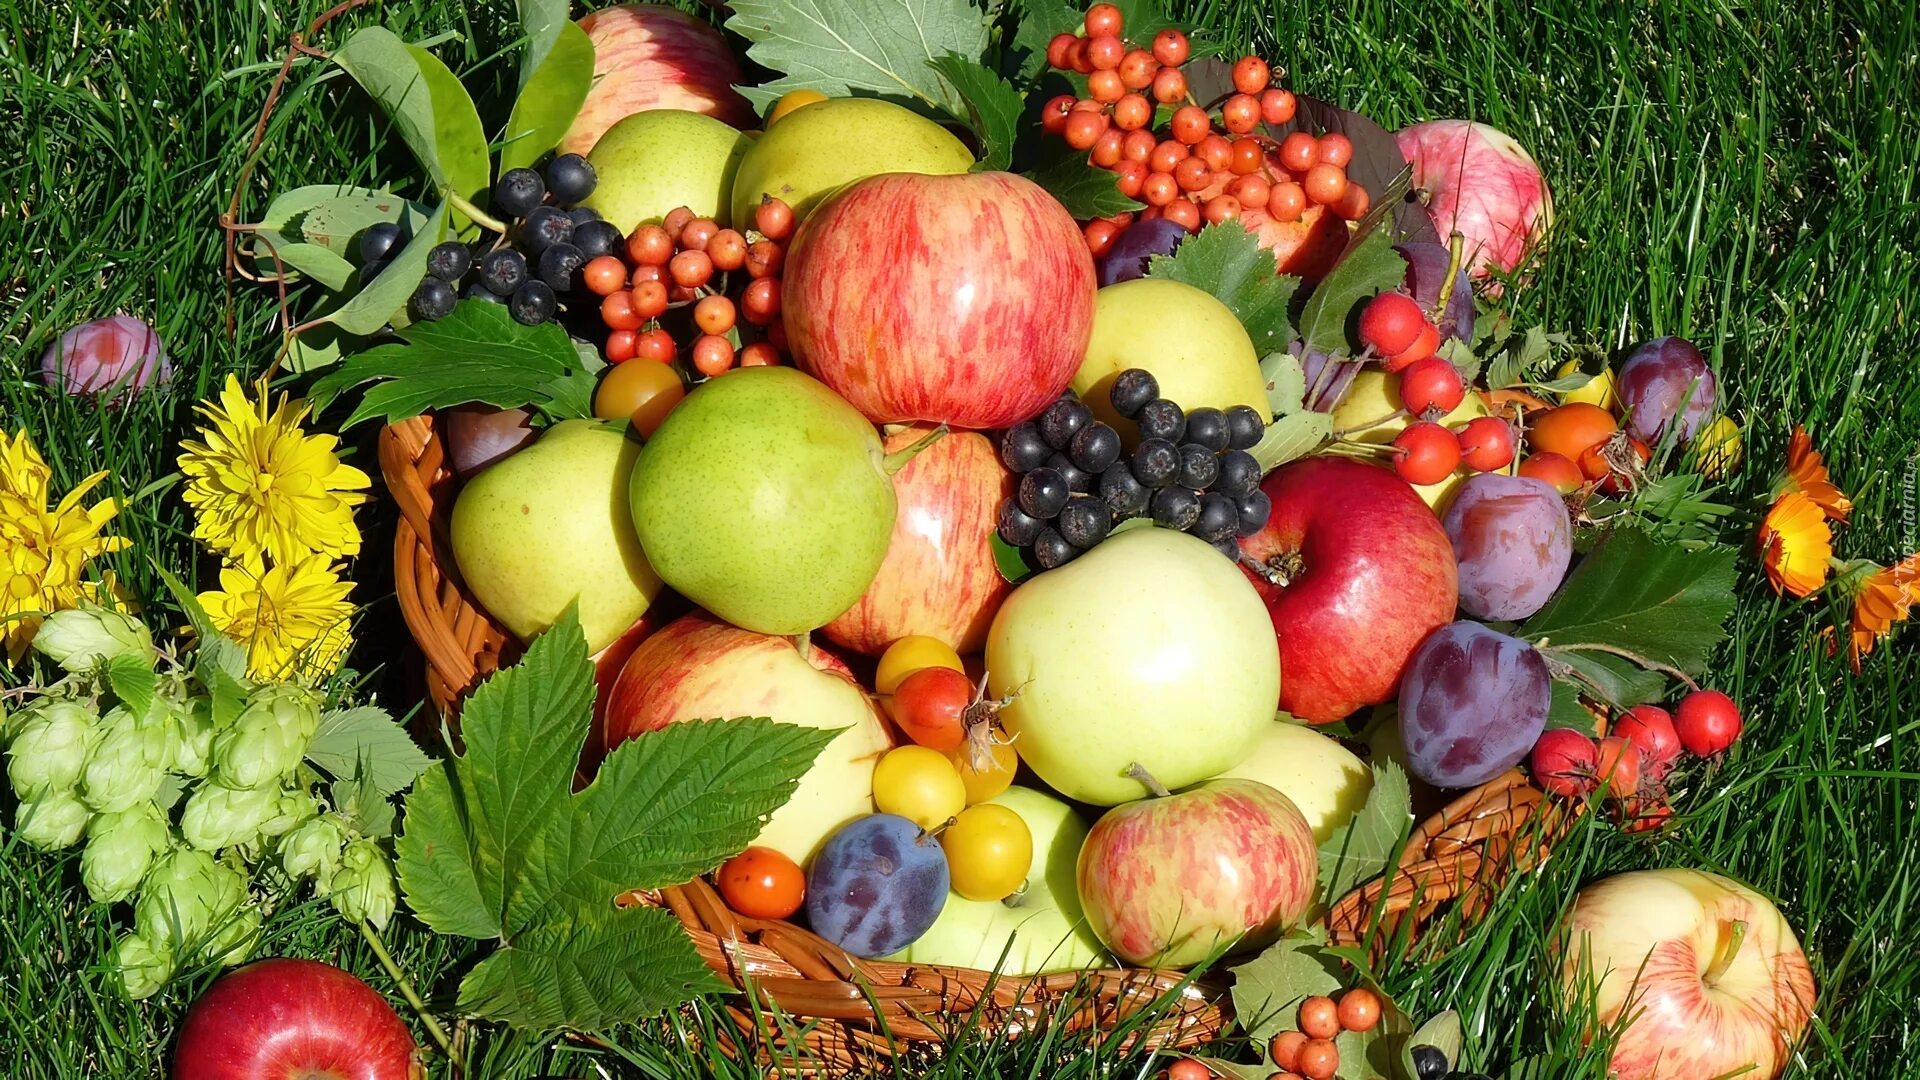 Лето время овощей и фруктов. Сад с фруктами. Плодово-ягодные культуры. Летние фрукты. Дары осени овощи и фрукты.